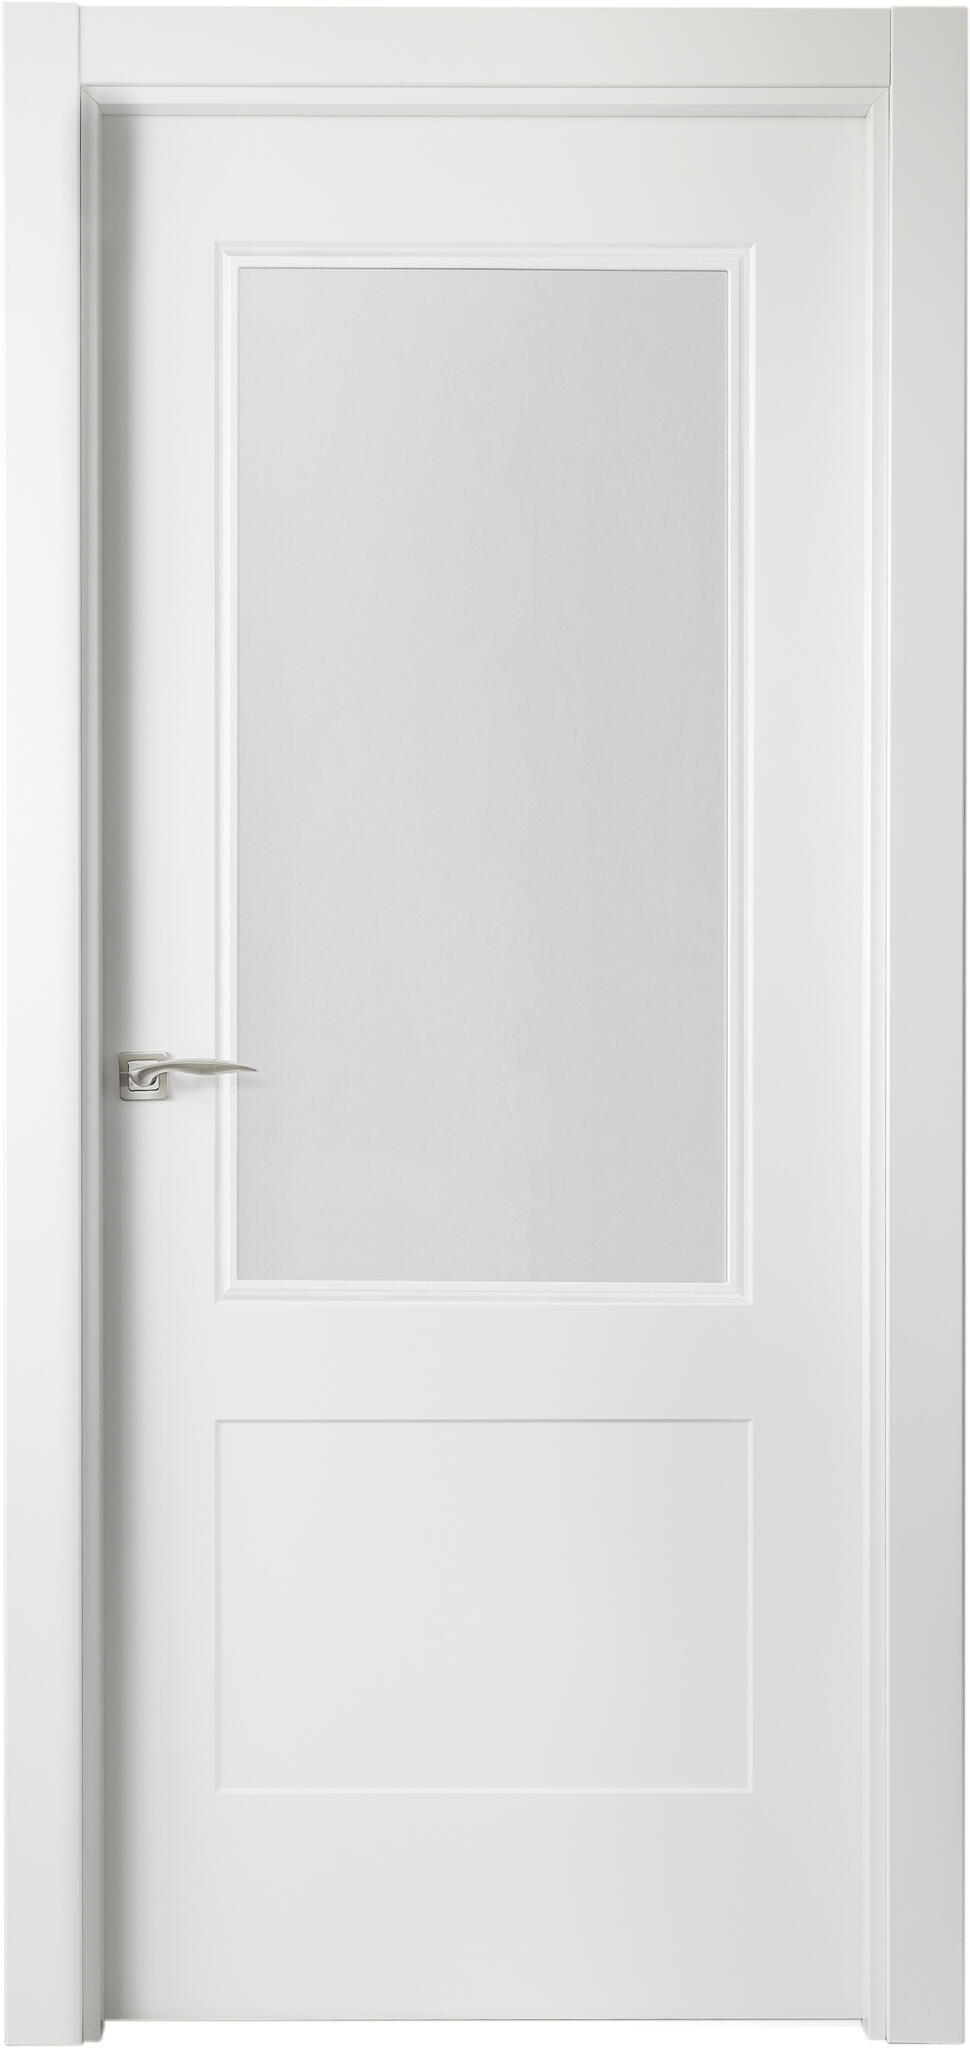 Puerta atlanta plus blanco apertura derecha con cristal de 82,5cm